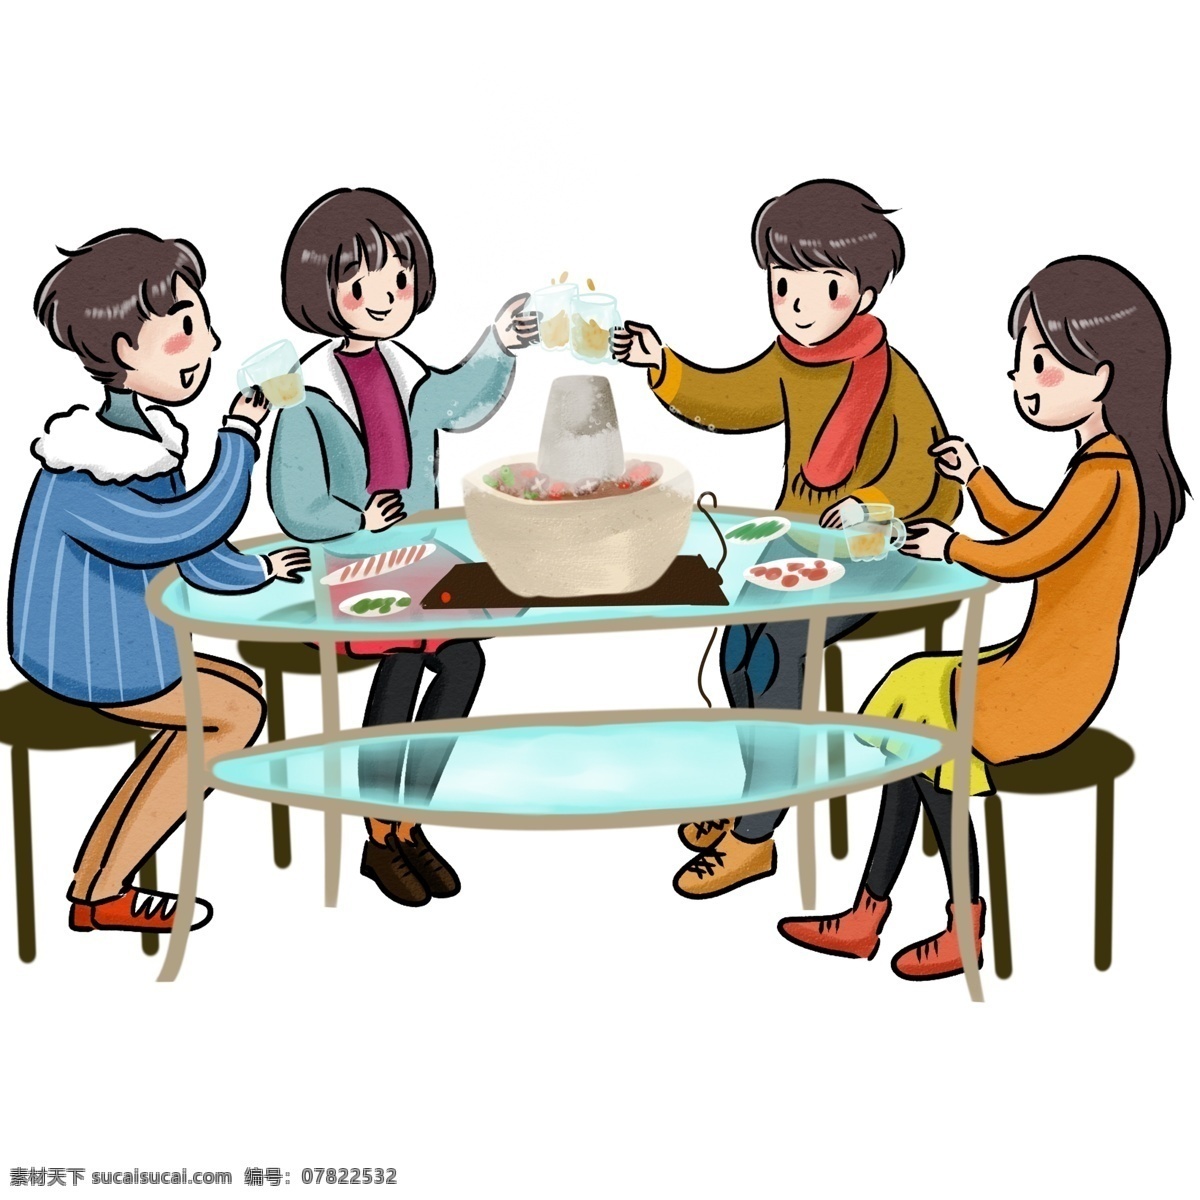 年底 朋友 聚餐 欢庆 迎新 春 吃 火锅 桌子 玻璃 蓝色 红色 黄色 过新年 吃火锅 碰杯 聊天 狂欢 同事 围巾 白色